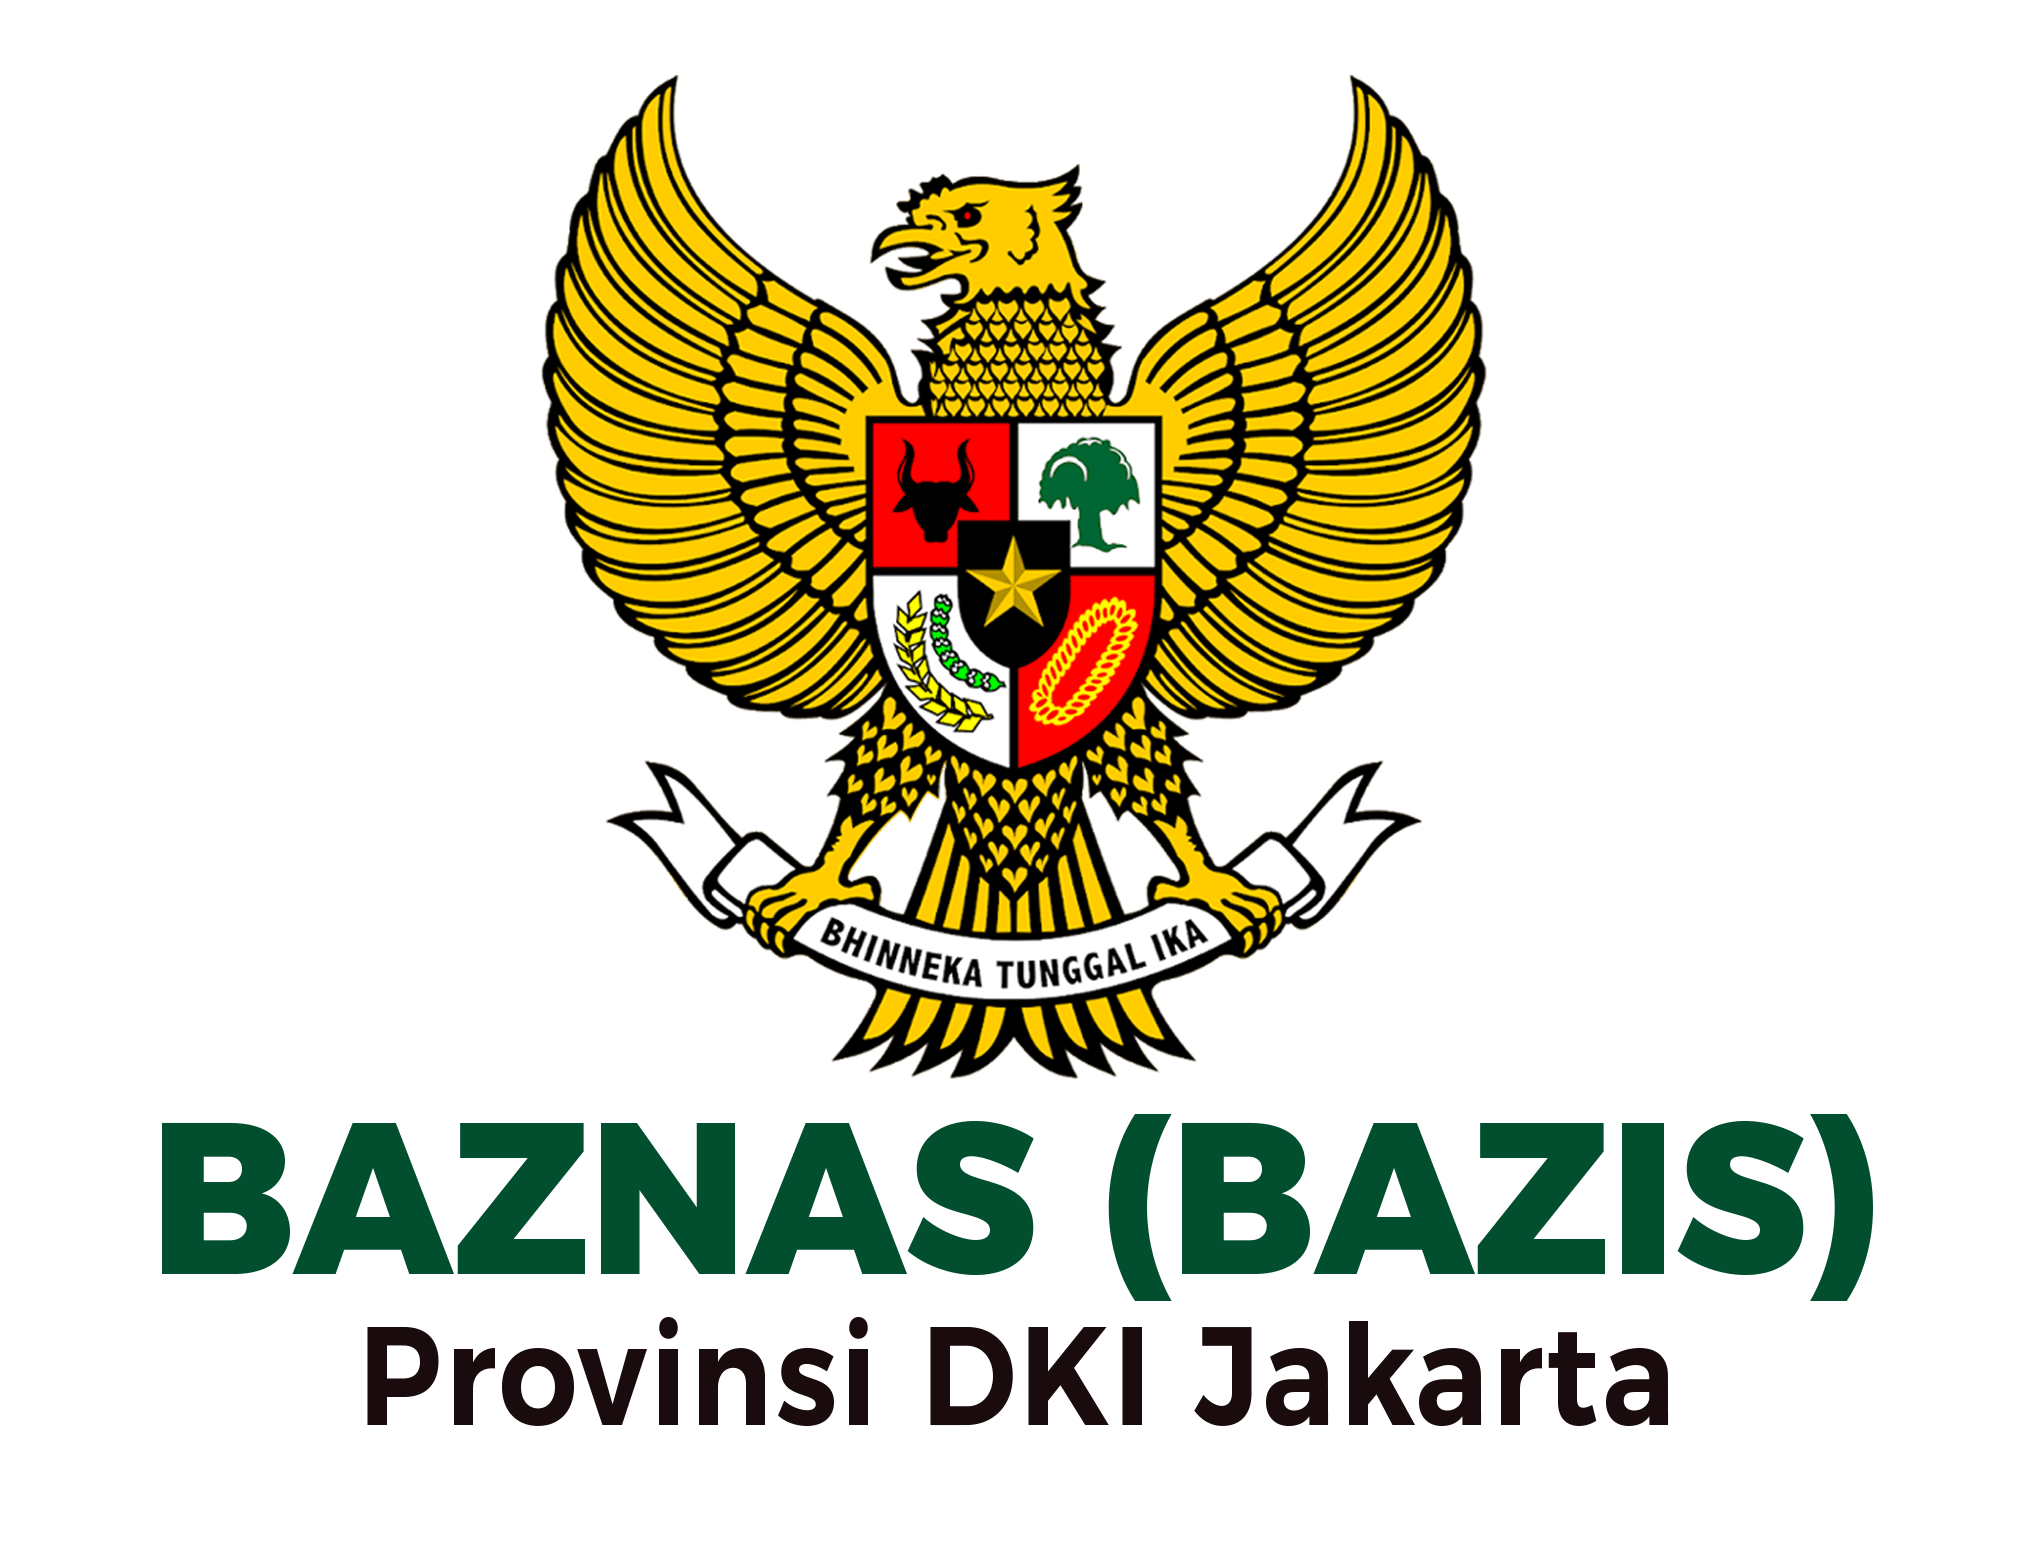 Baznas Bazis Jakarta Buka Lowongan Kerja, Berikut Syaratnya!